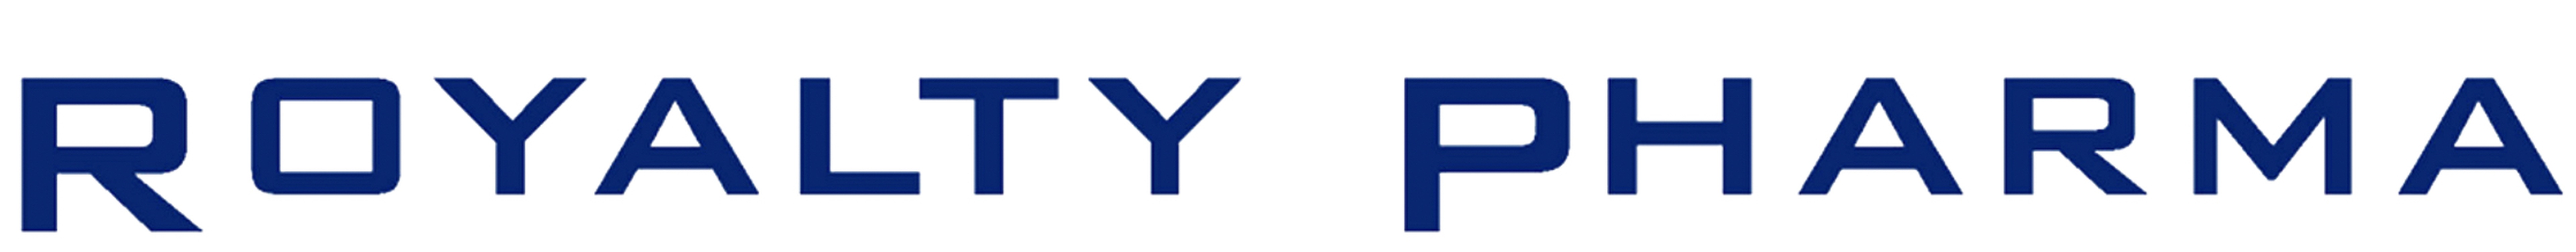 Royalty Pharma logo 250.jpg